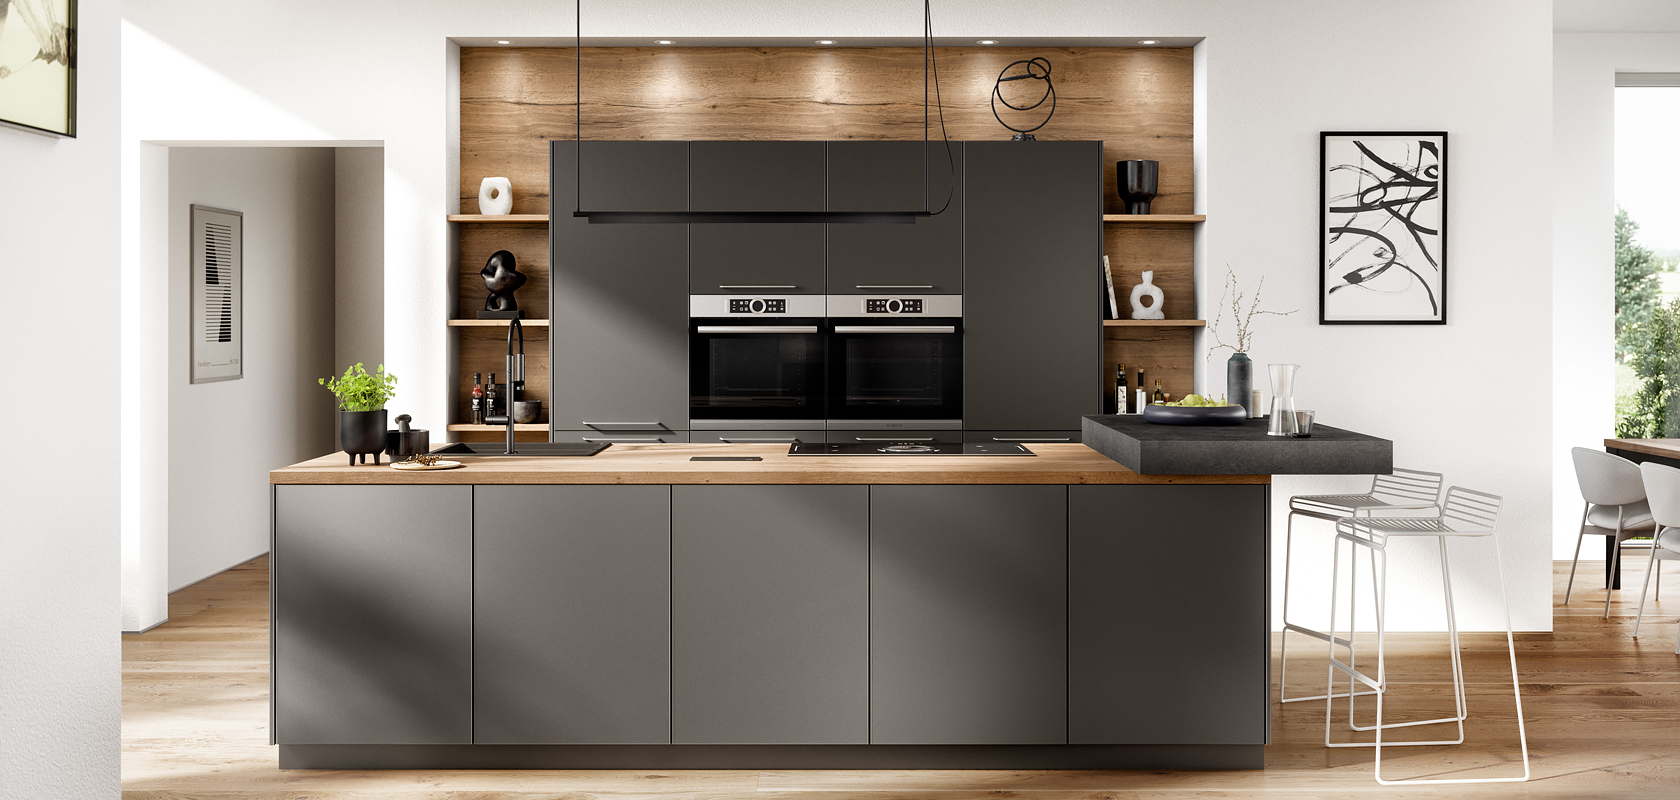 Moderne keukeninterieur met strakke donkere kasten, ingebouwde apparaten en houten accenten, waarbij functionaliteit en stijl samenkomen in een licht, minimalistisch huisontwerp.